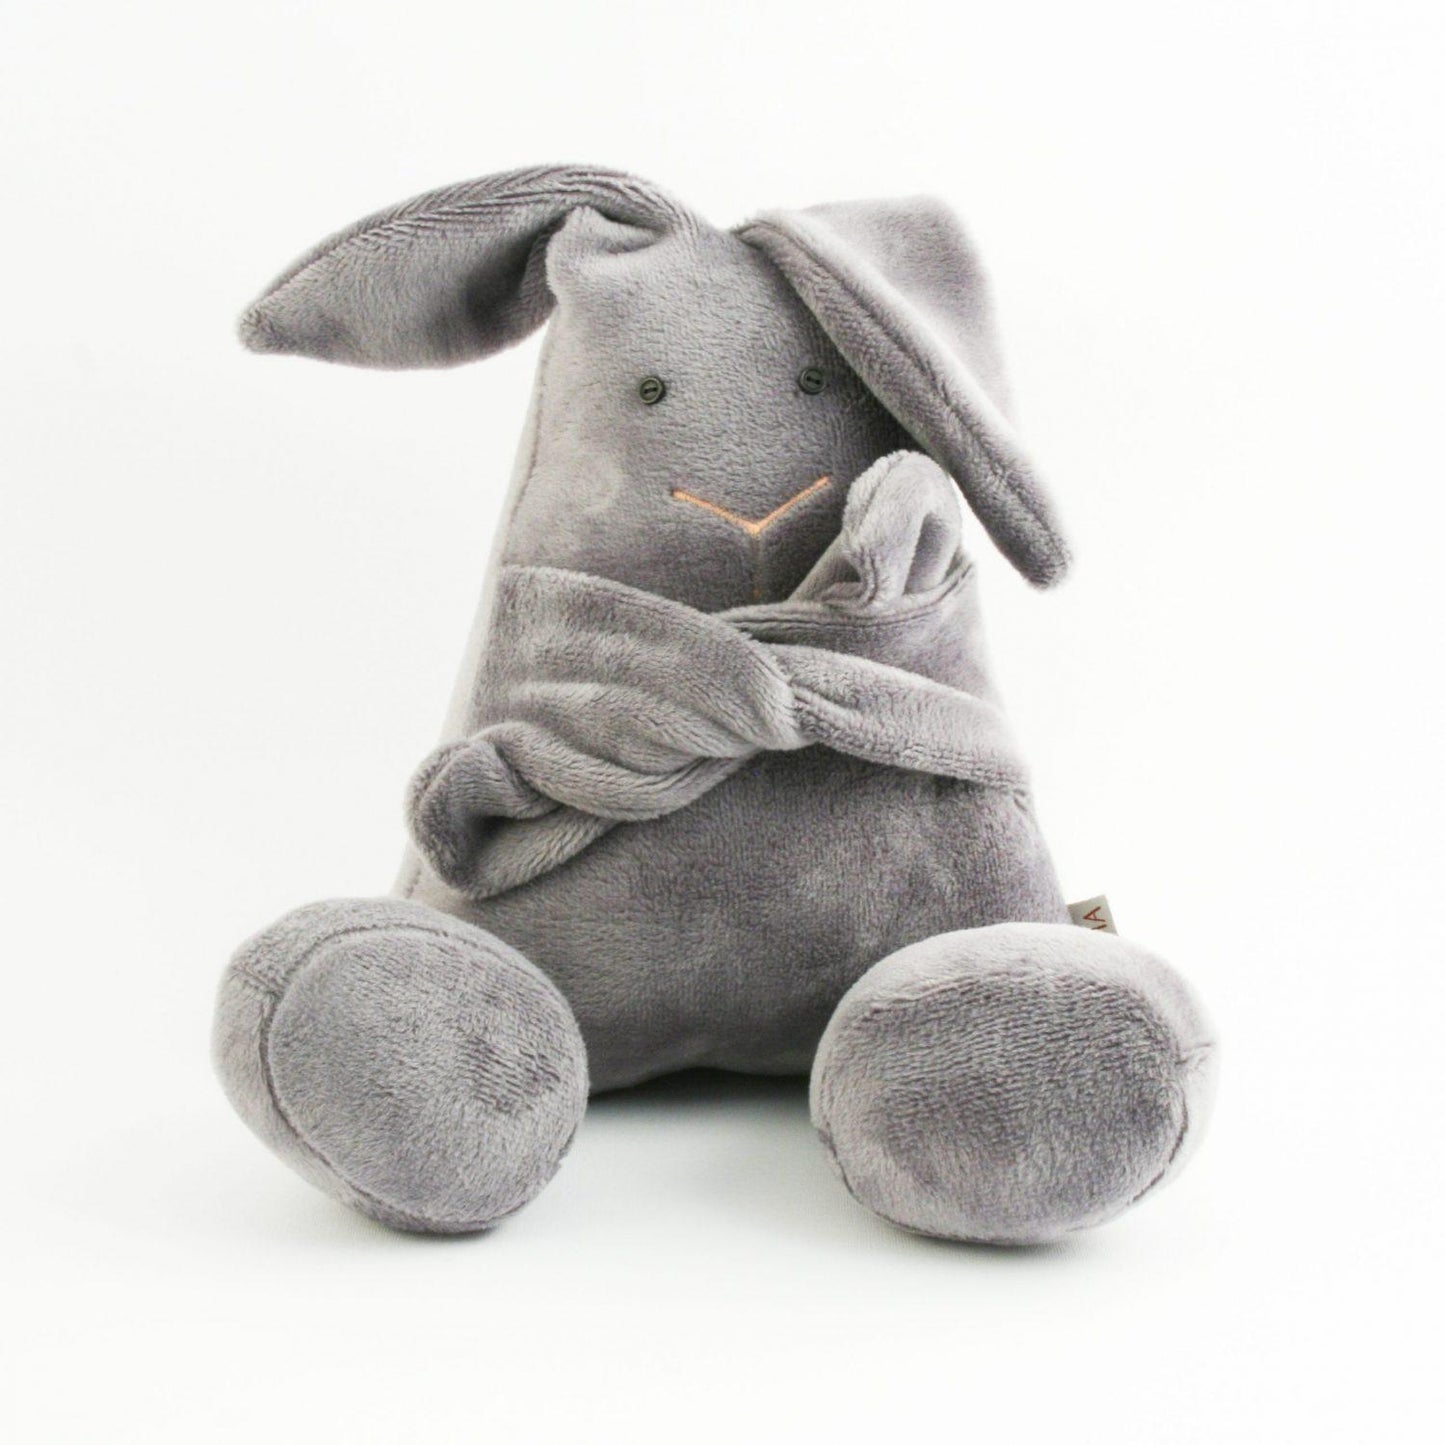 Hugging Bunnies - Grey bunny